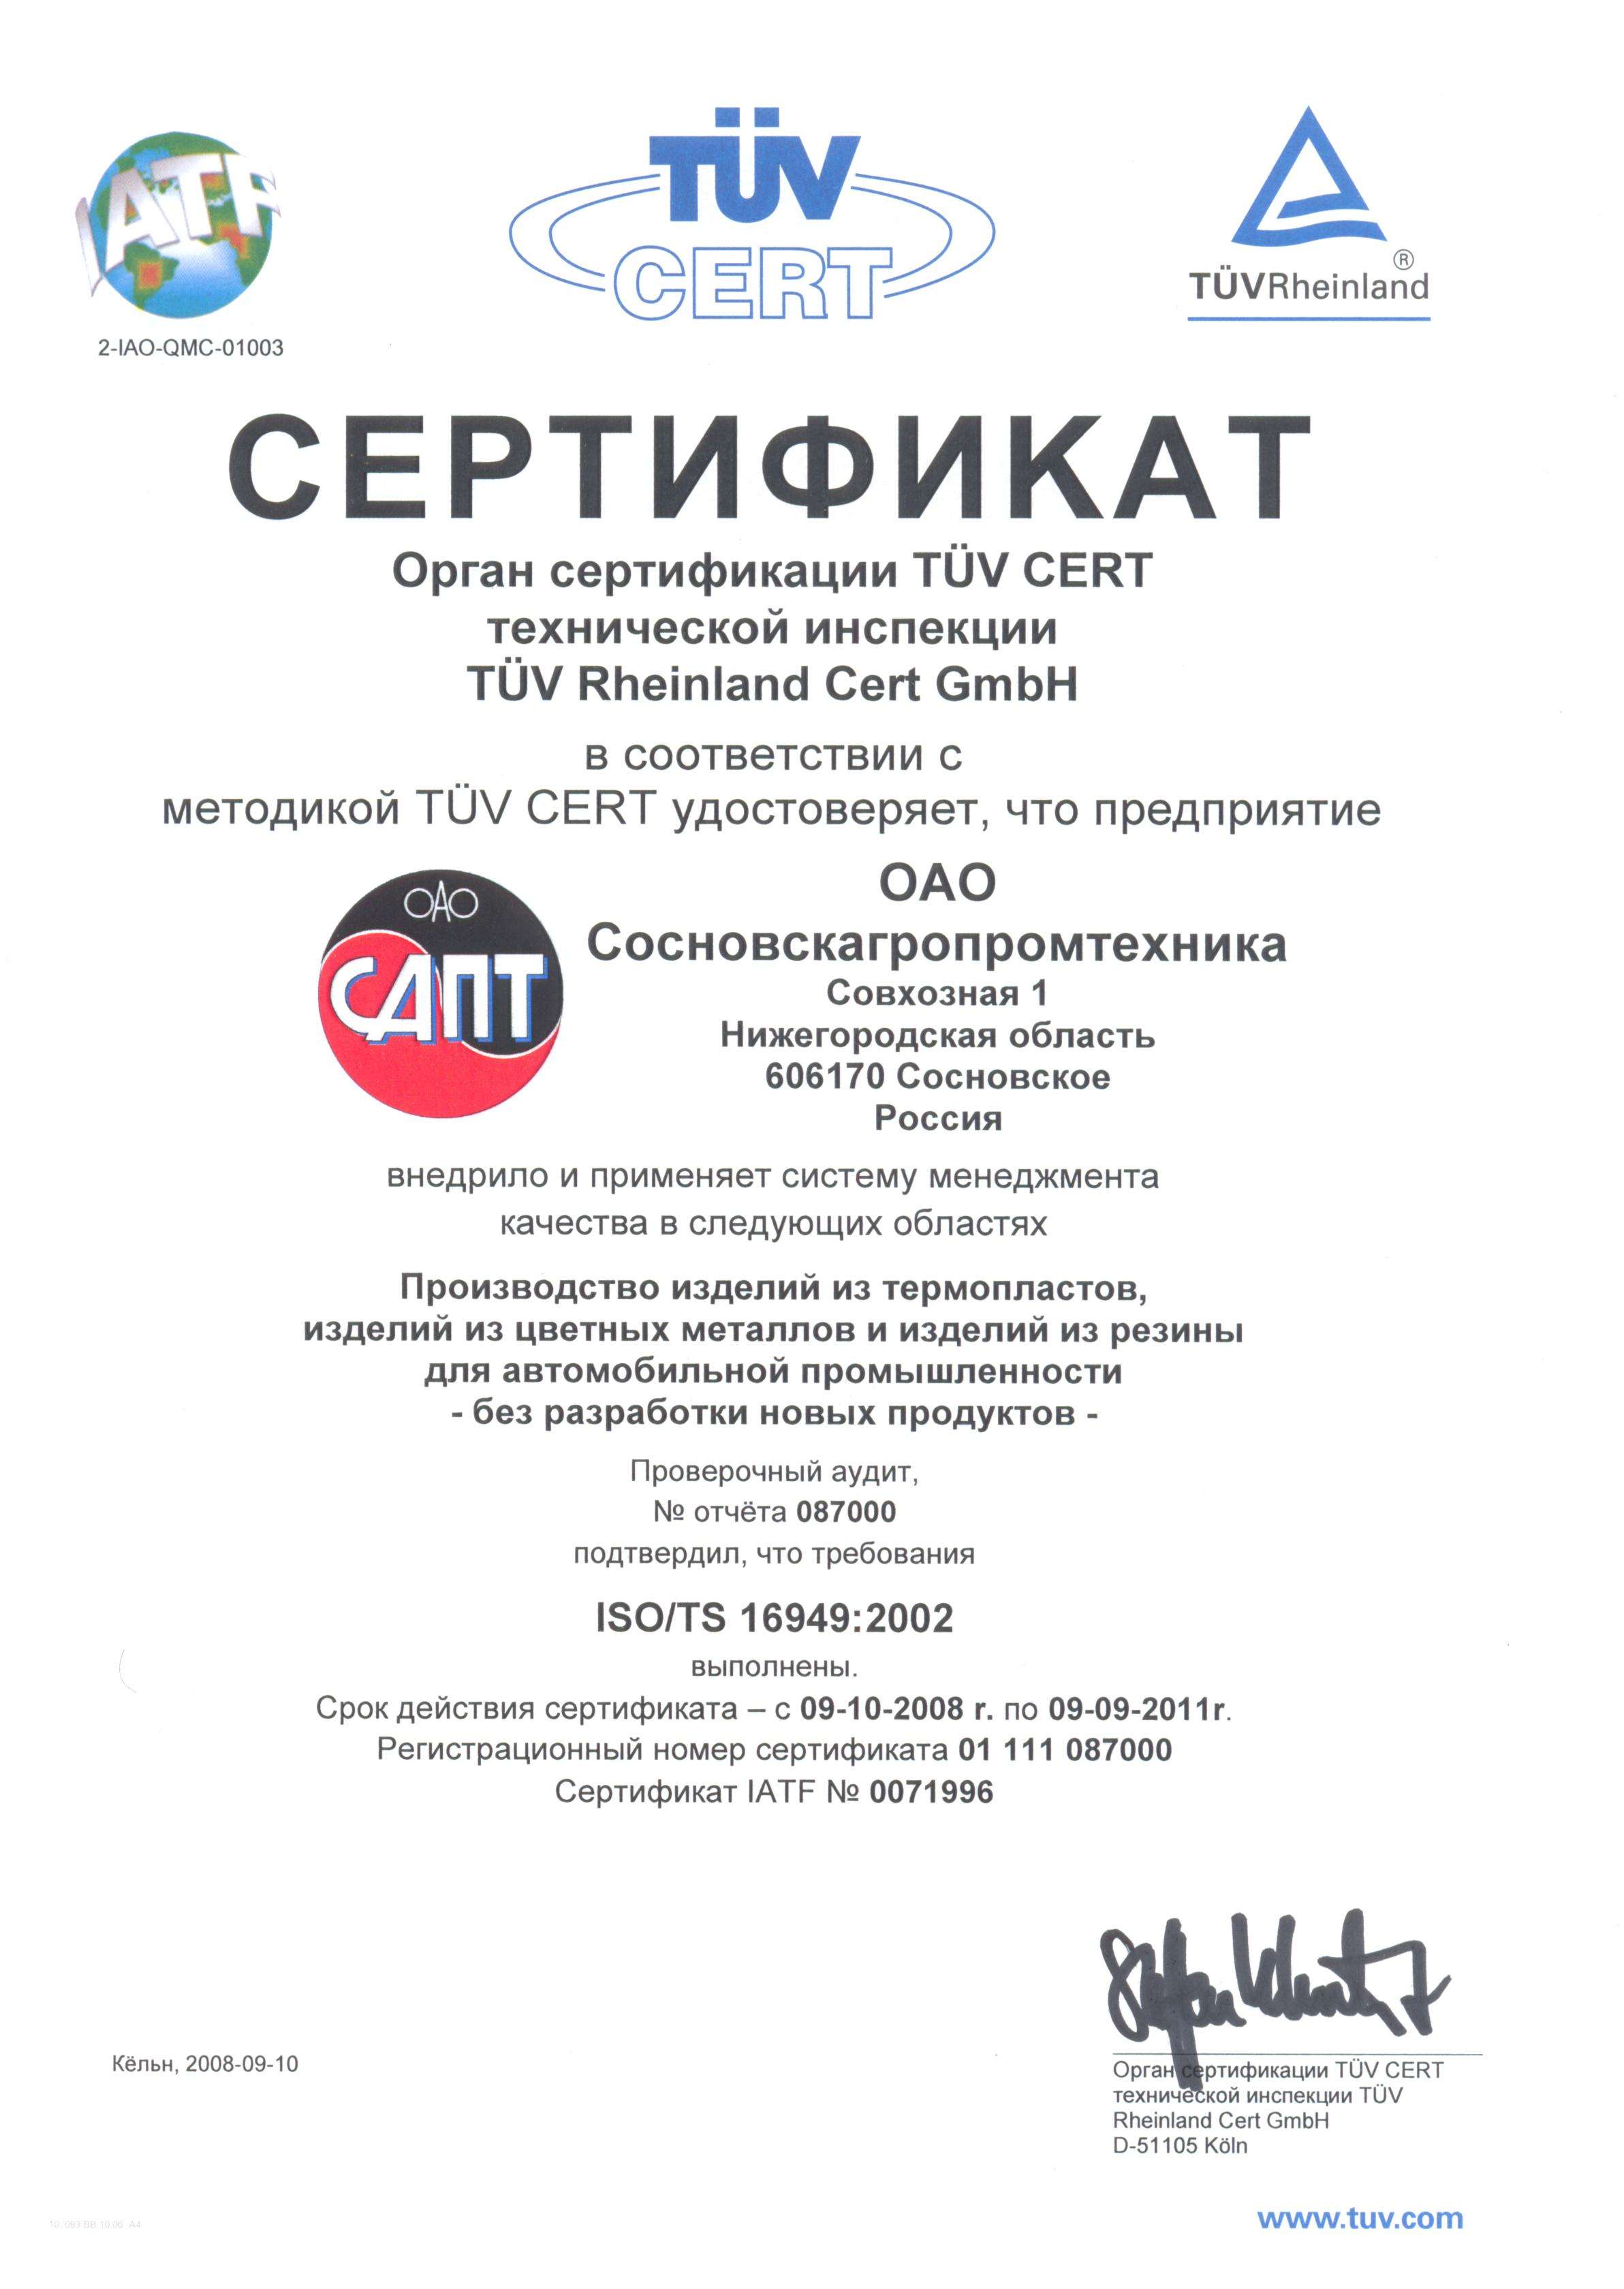 2008 год - Проведена сертификация системы менеджмента качества в АО Сосновскагропромтехника